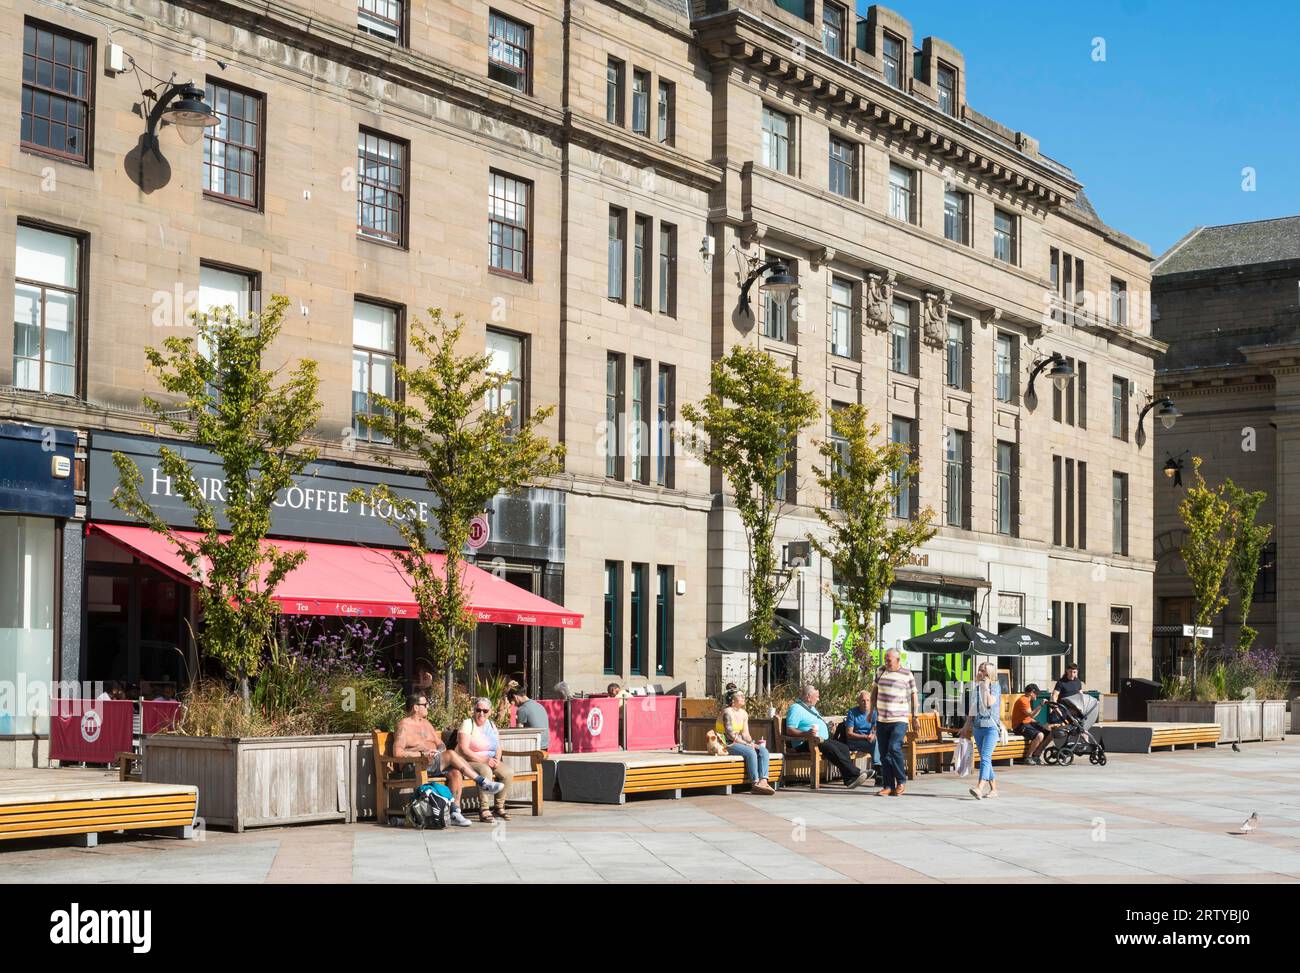 Des gens assis au soleil. City Square, Dundee, Écosse, Royaume-Uni Banque D'Images